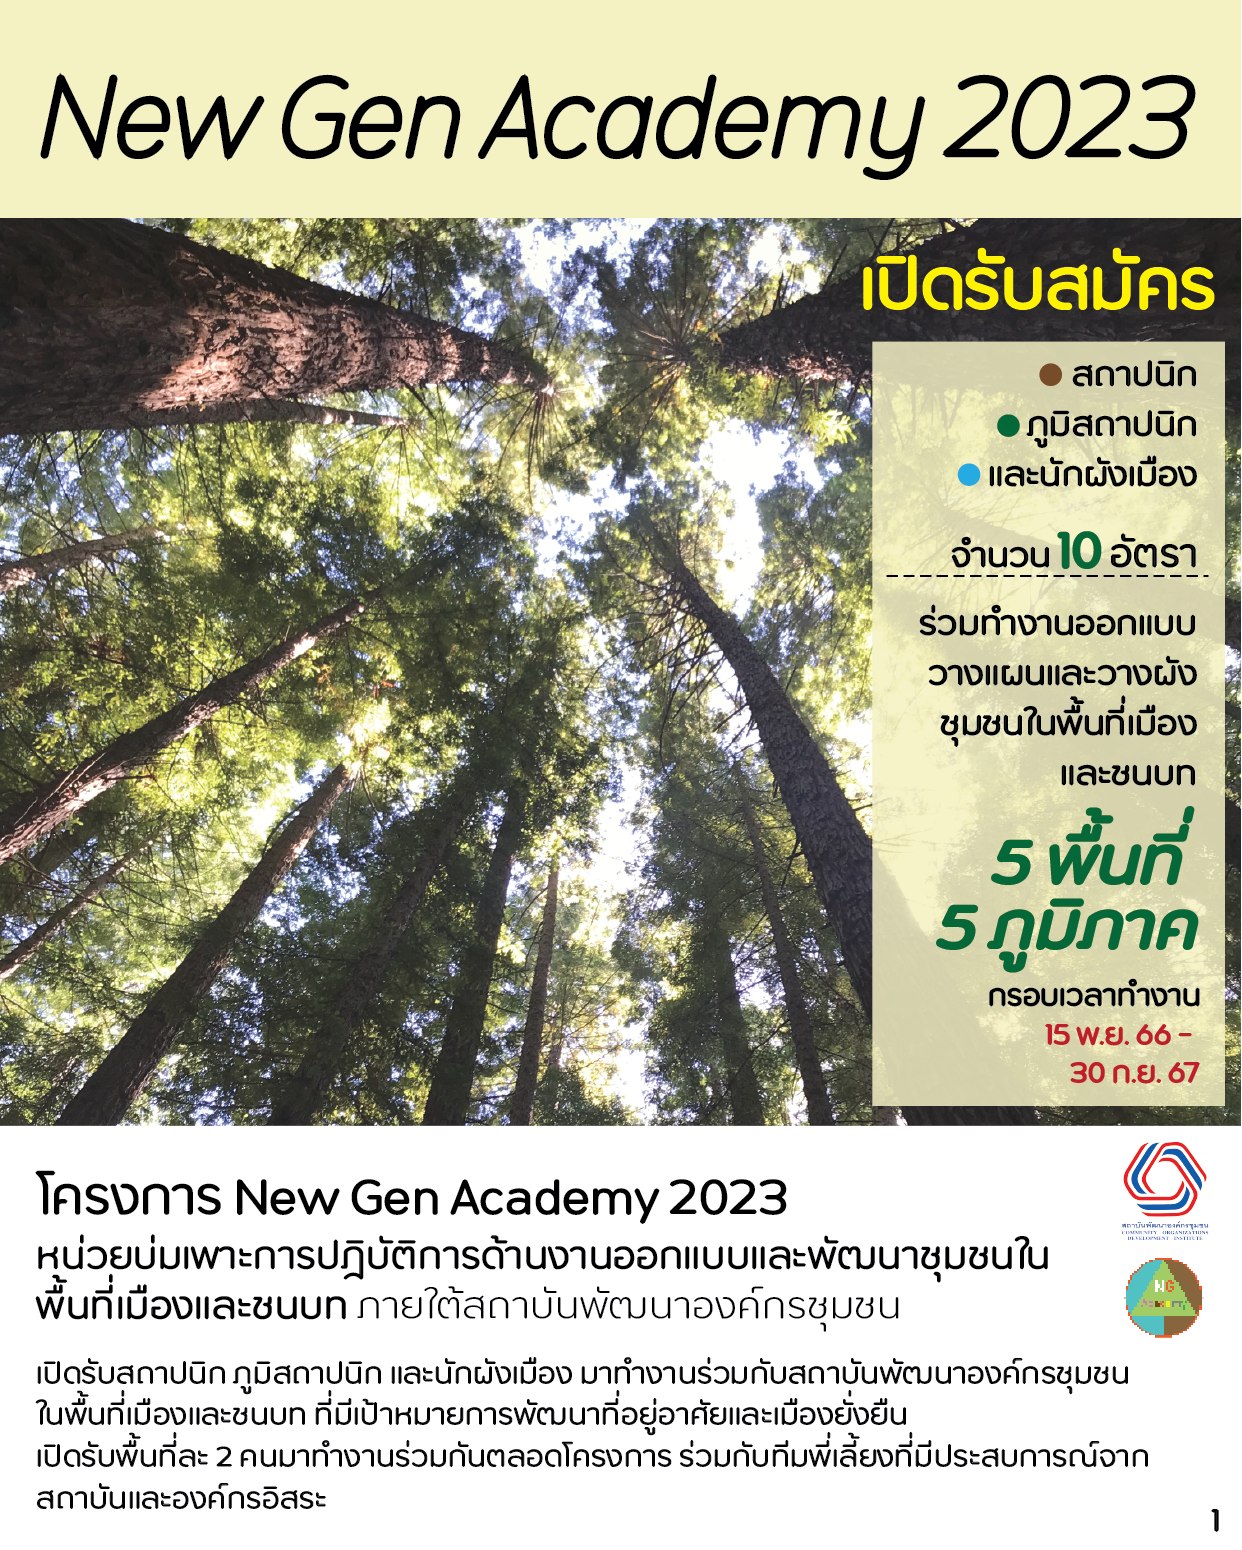 โครงการ New Gen Academy 2023